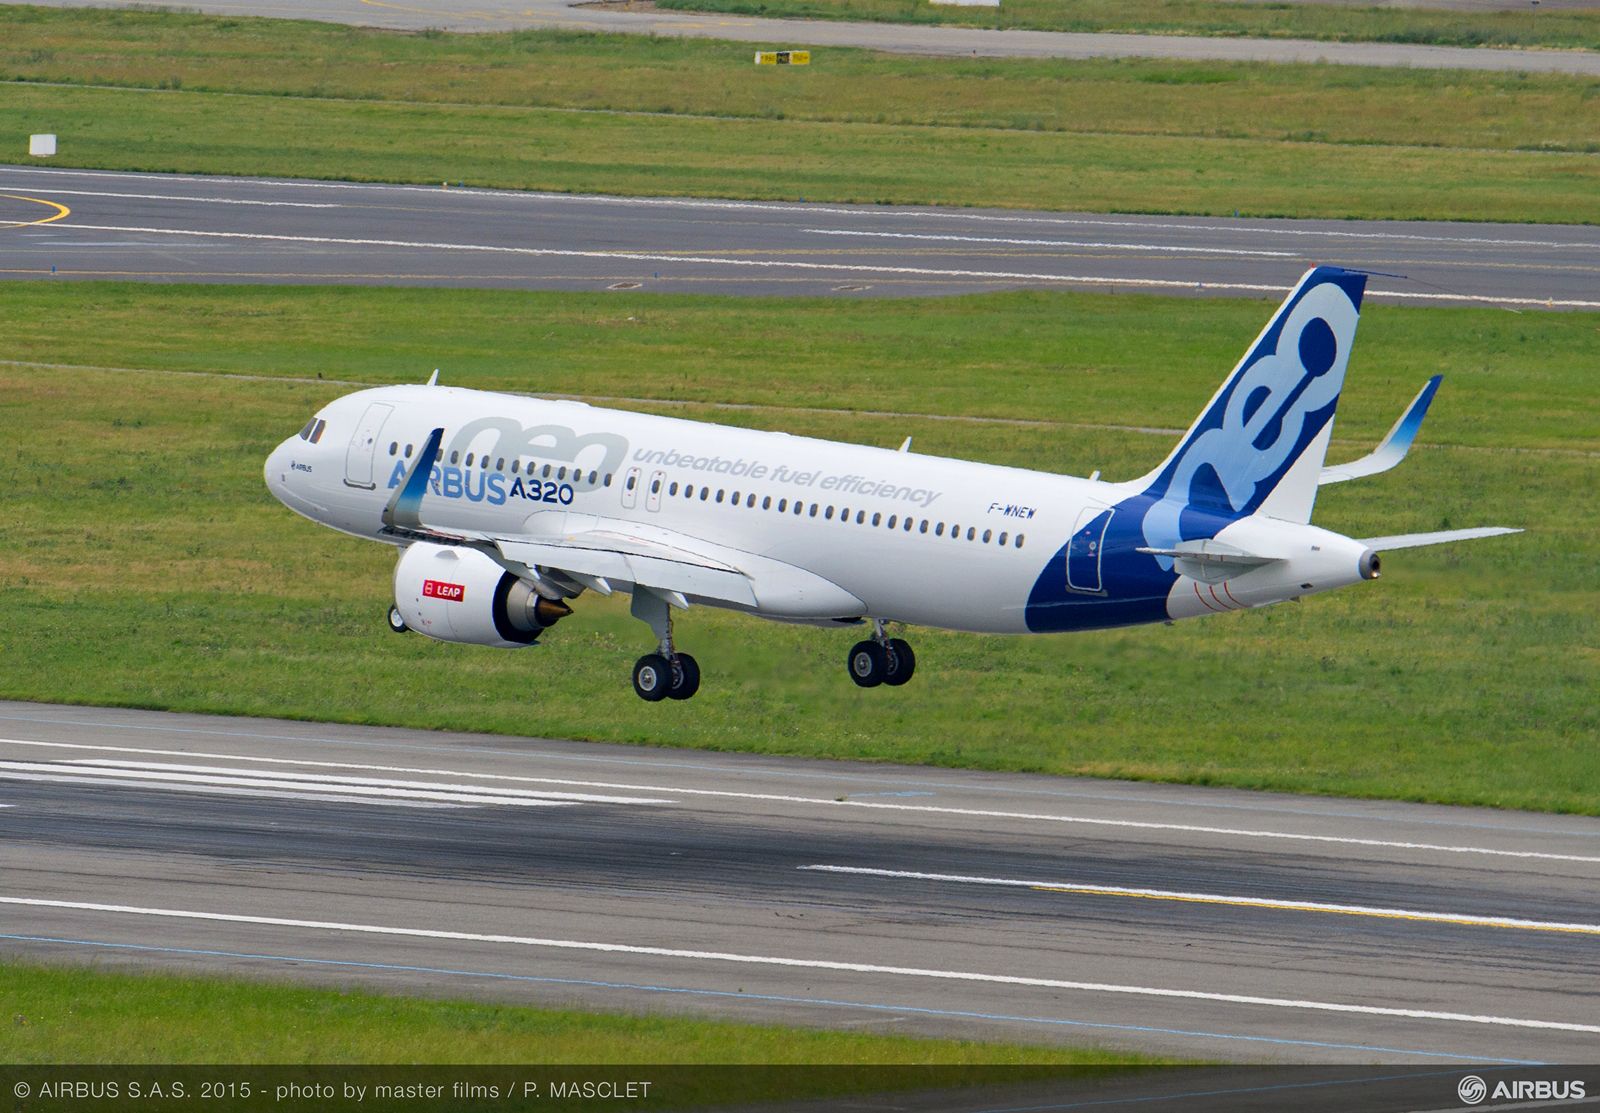 A320neo prototípus leszállás közben Toulouse-ban. A kép illusztráció. (Fotó: Airbus) | © AIRportal.hu